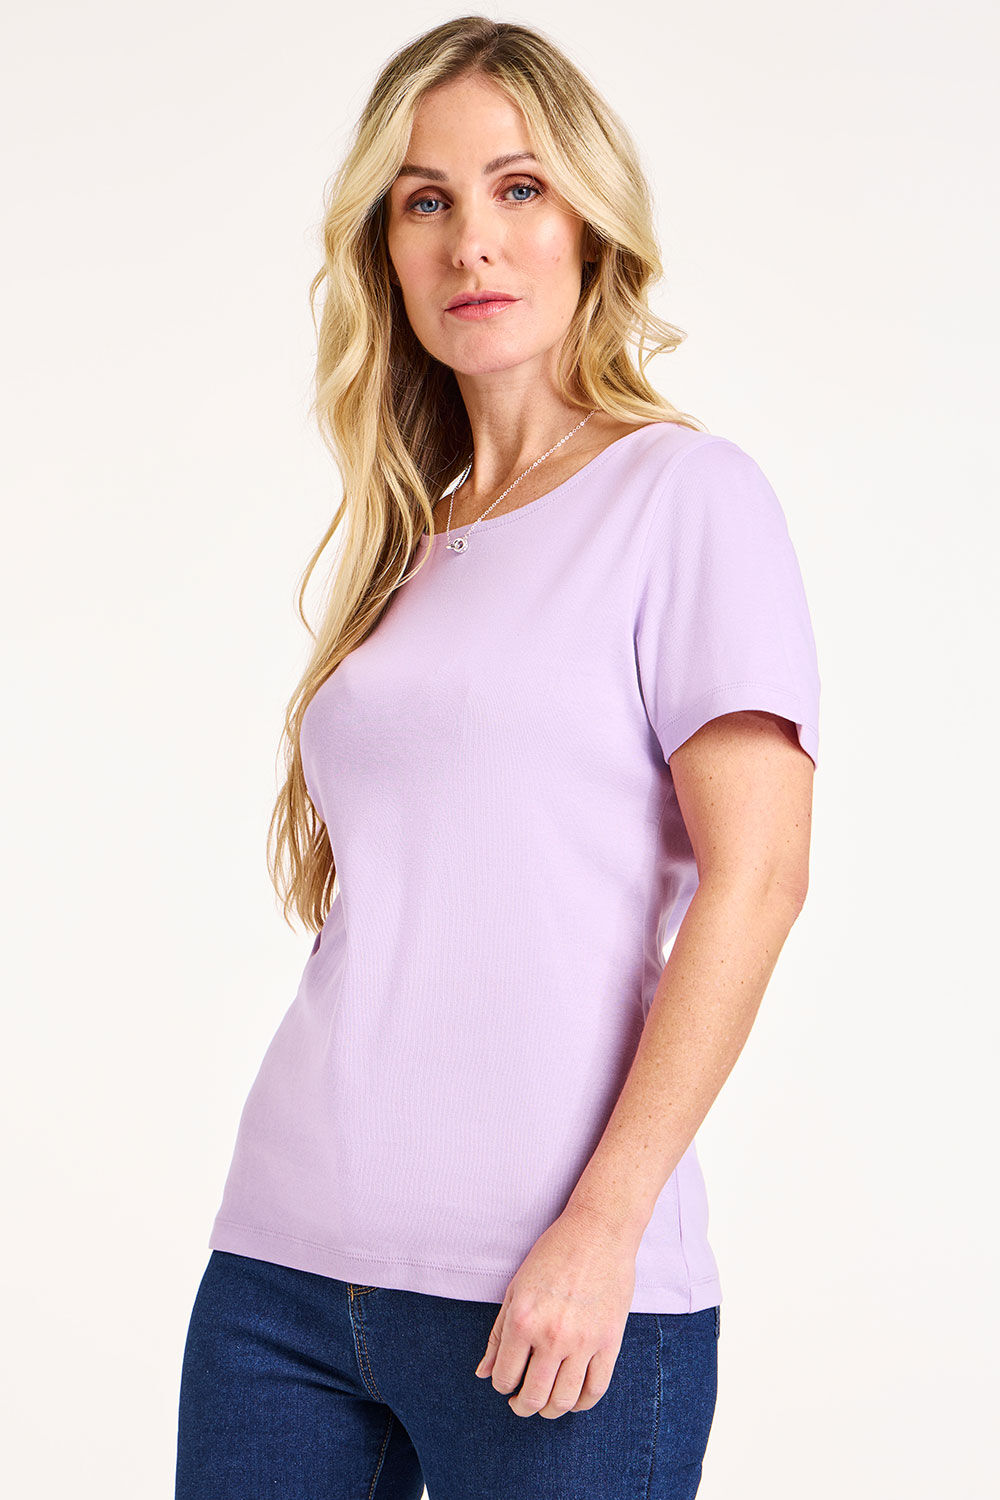 Bonmarche Women’s Light Purple Cotton Classic Short Sleeve Plain Scoop Neck T-Shirt, Size: 18